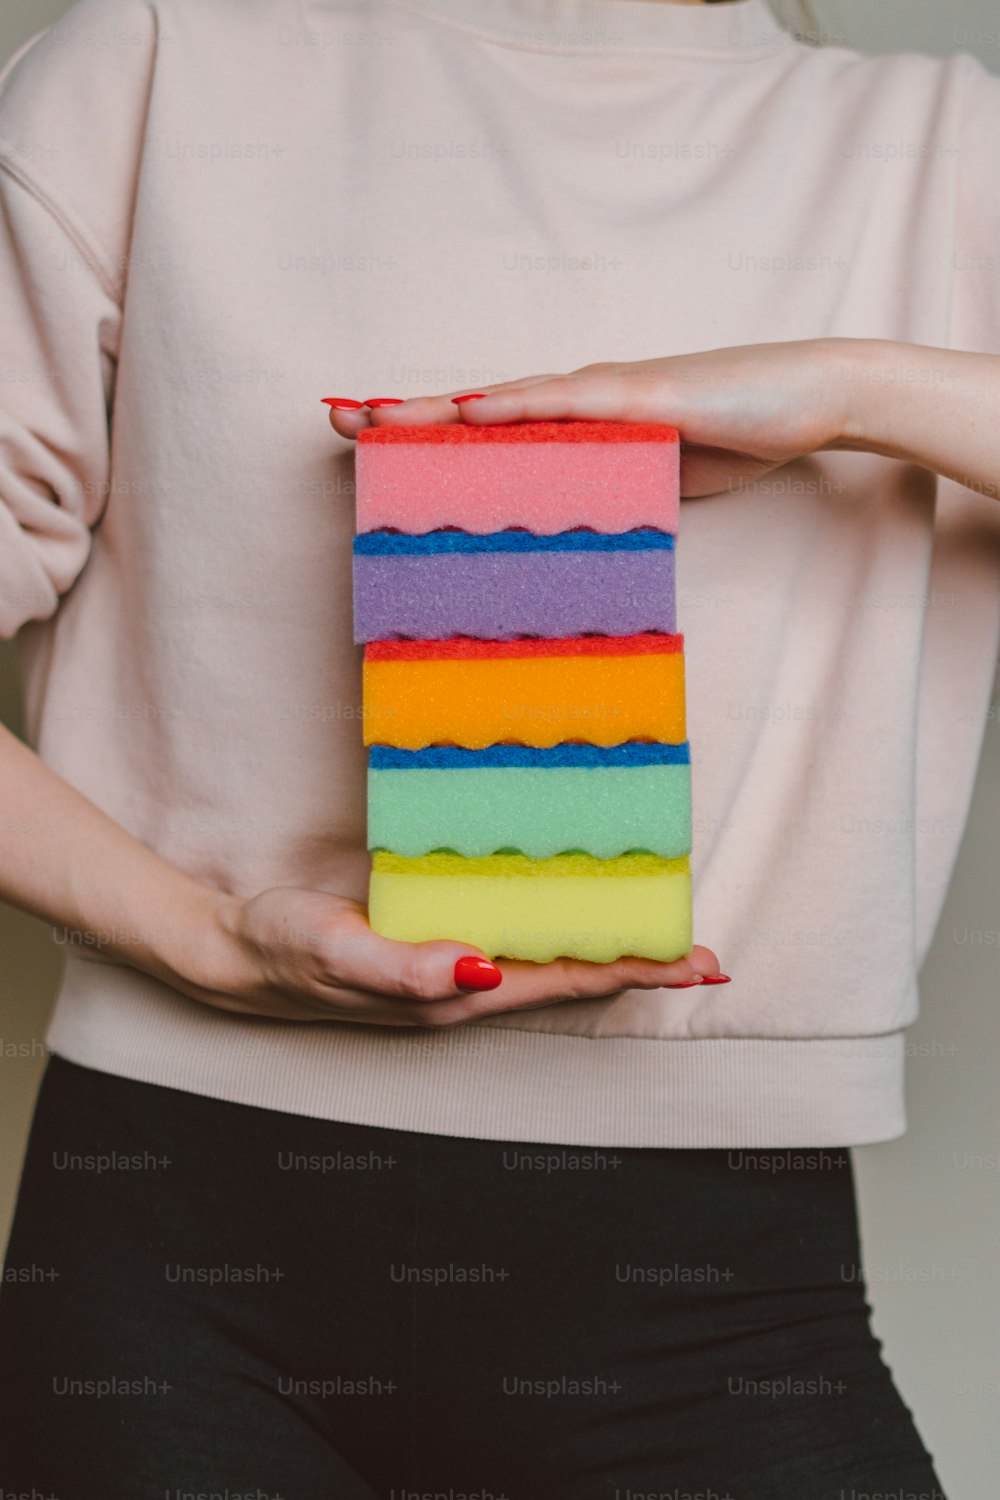 Una mujer sosteniendo un pedazo de pastel en sus manos